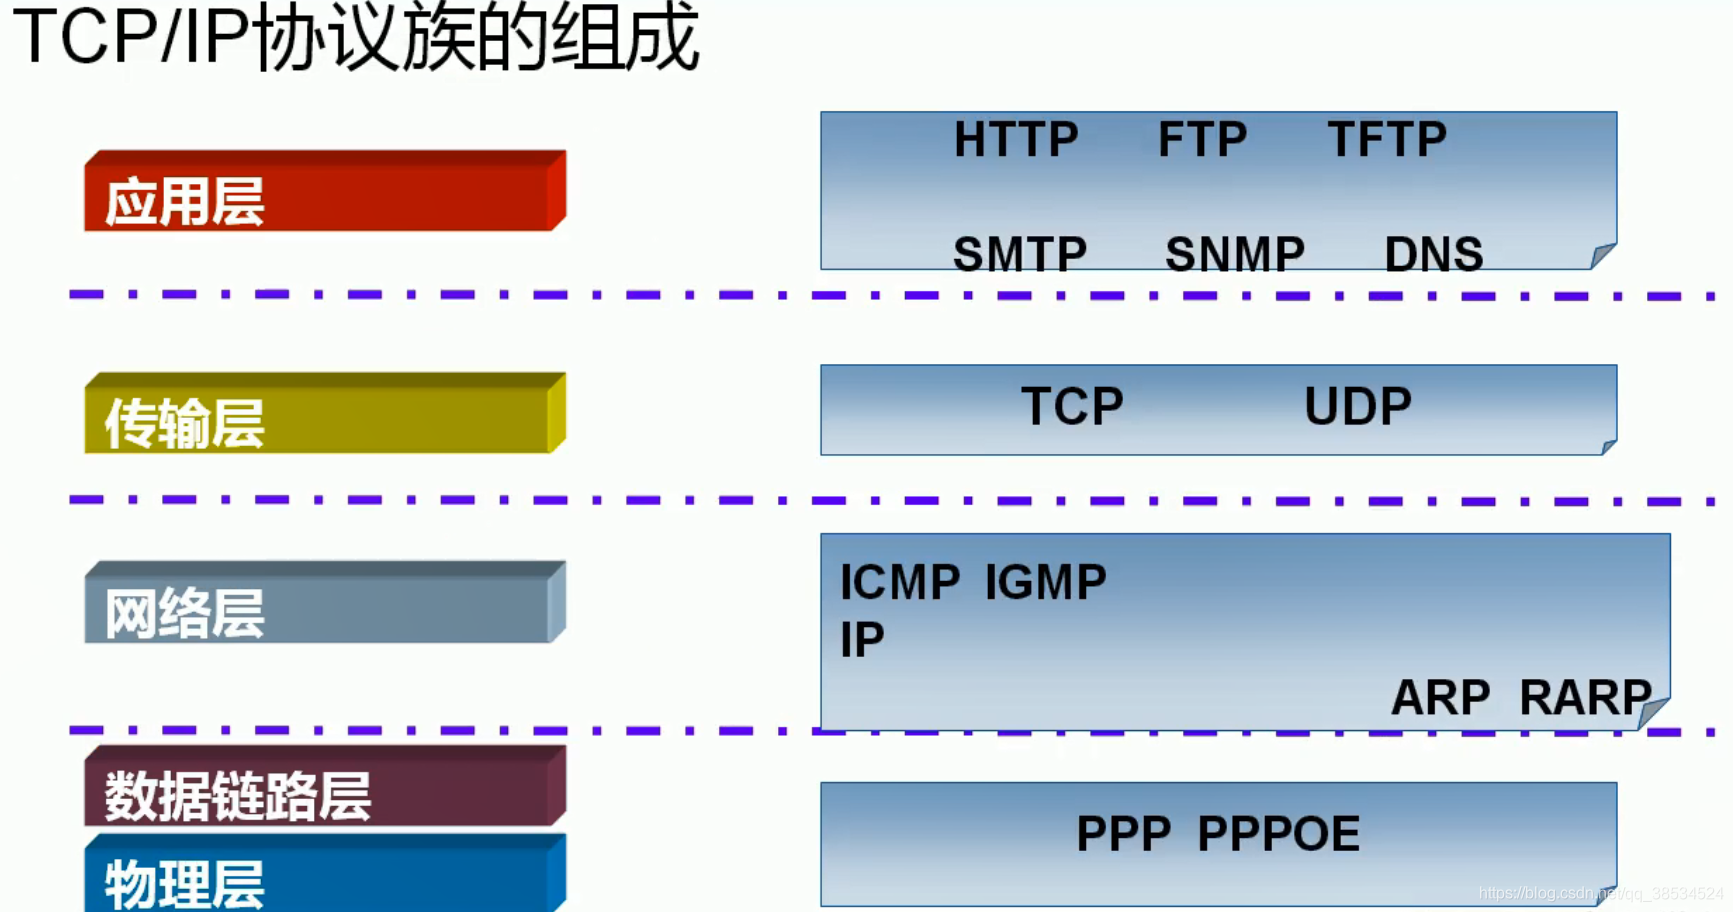 【网络】TCP/IP五层模型中的典型协议以及特性